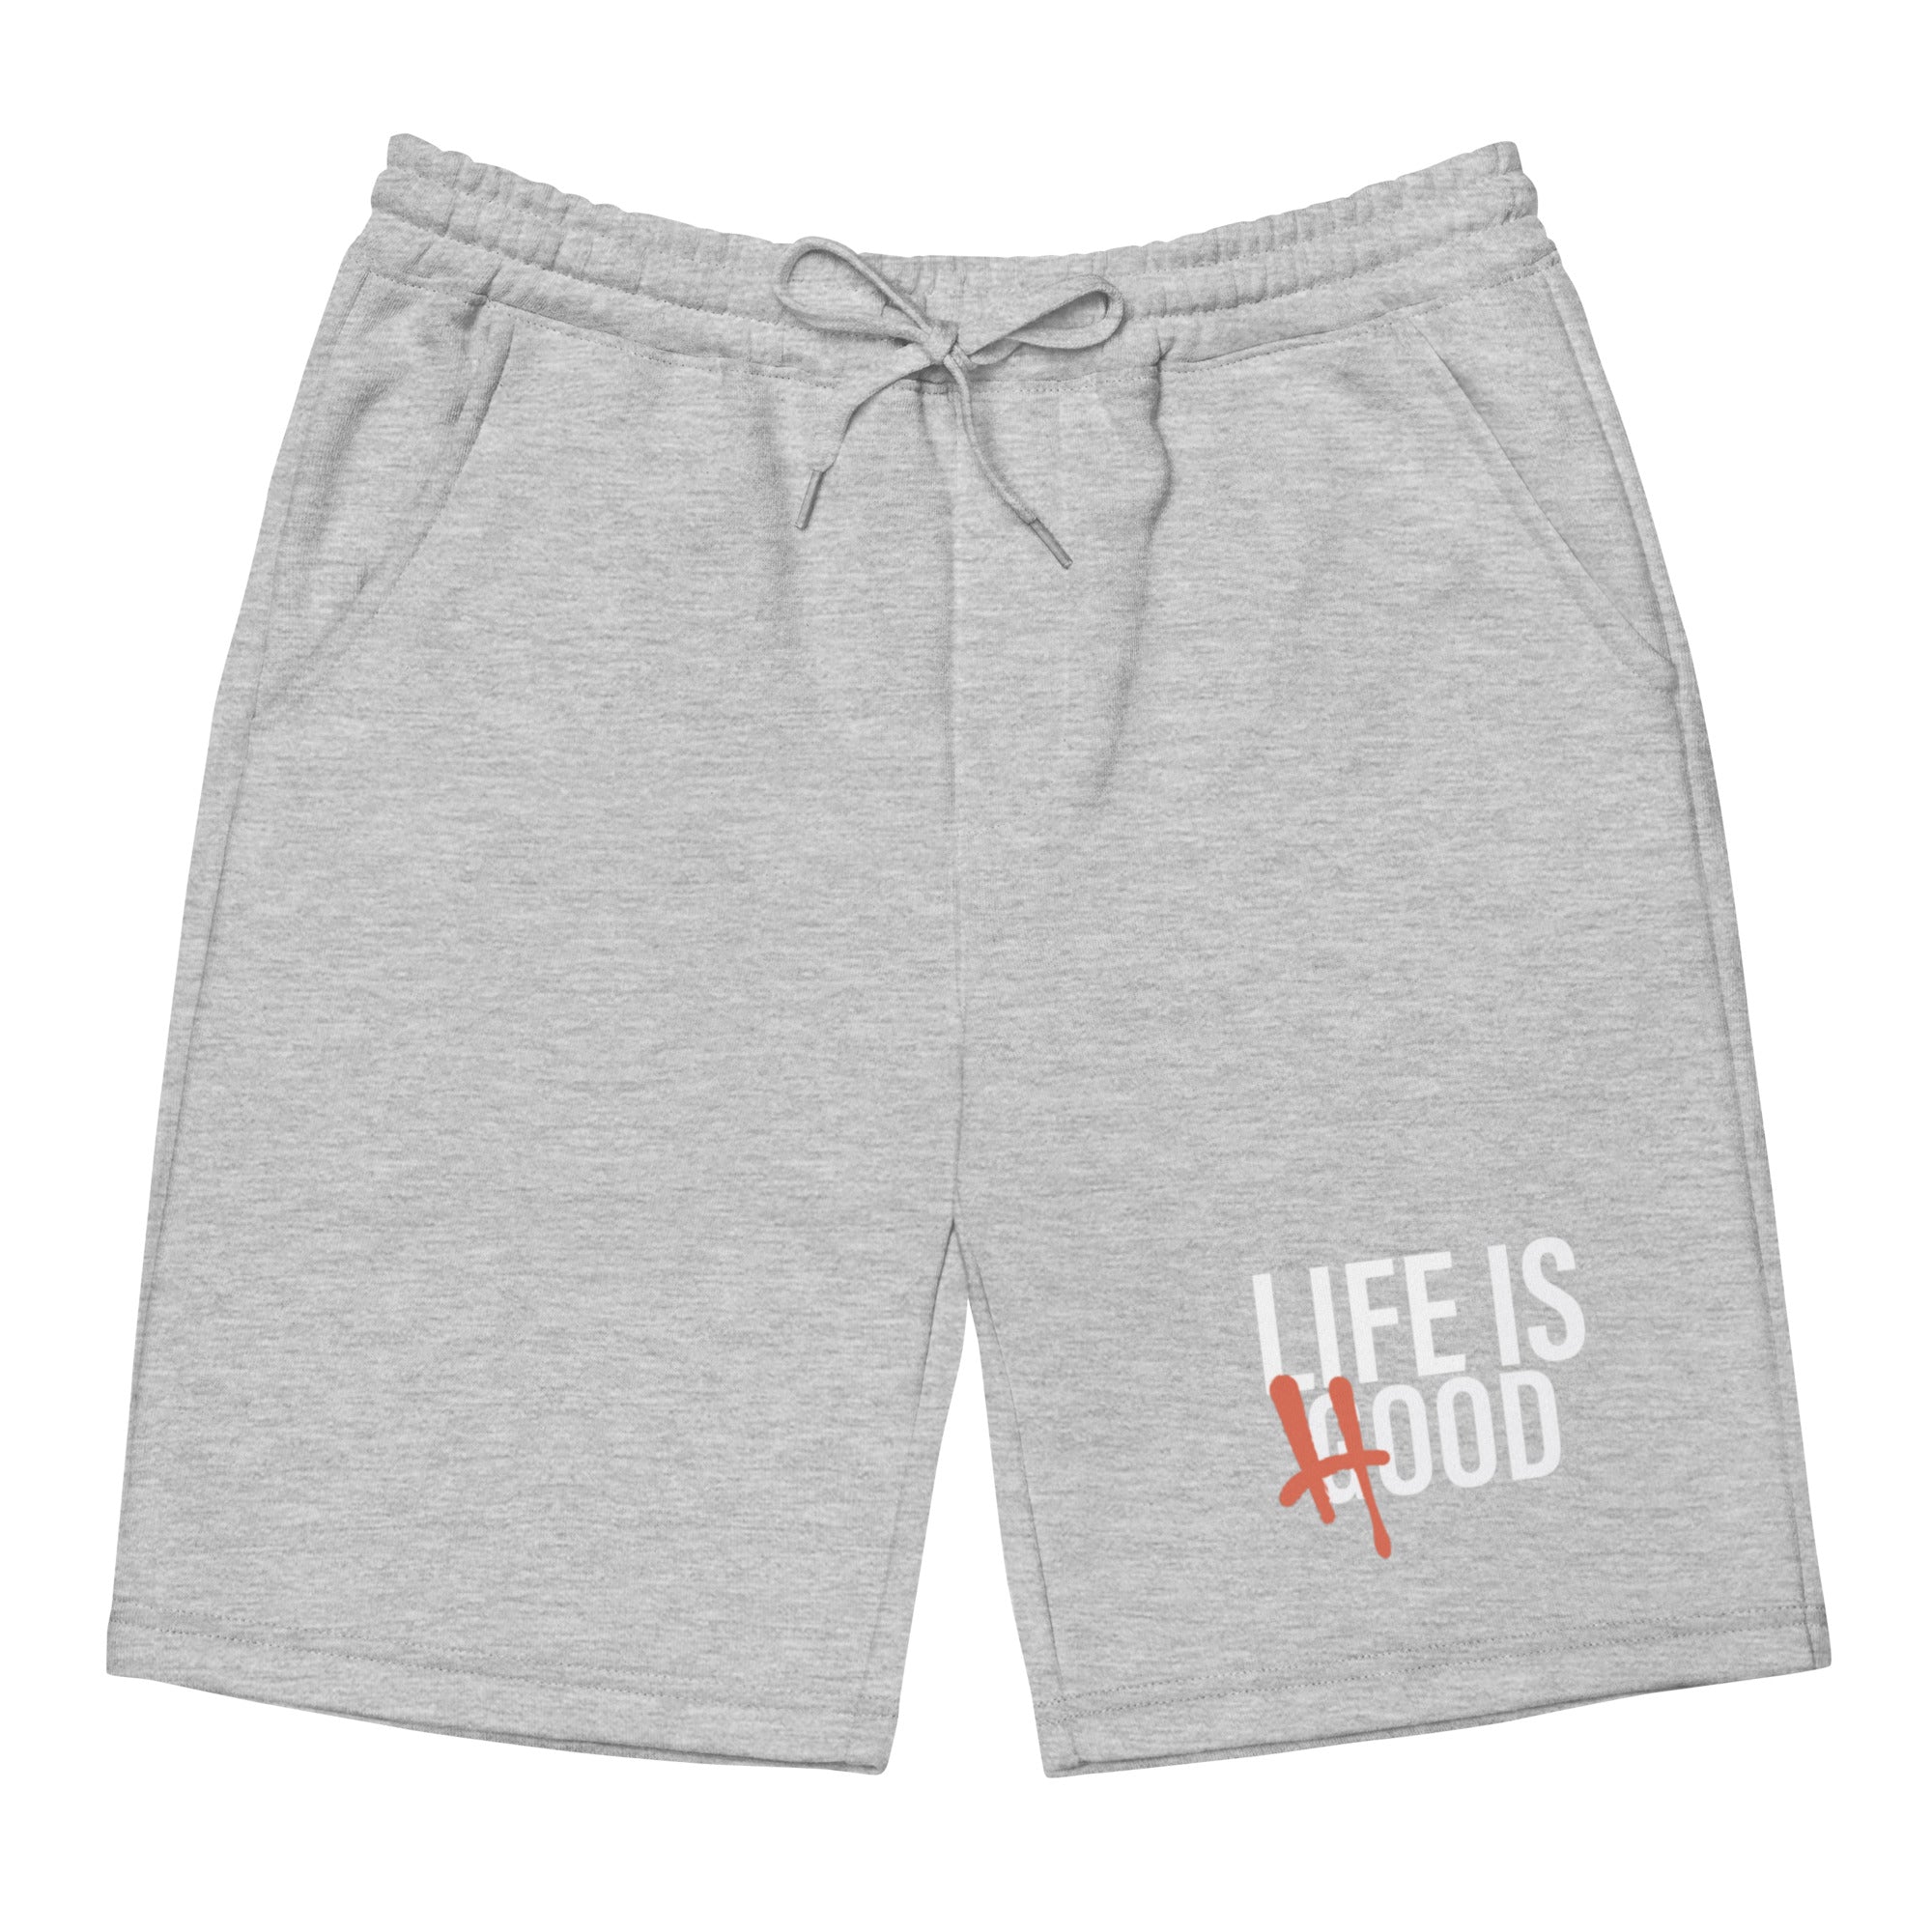 Life is Hood Shorts